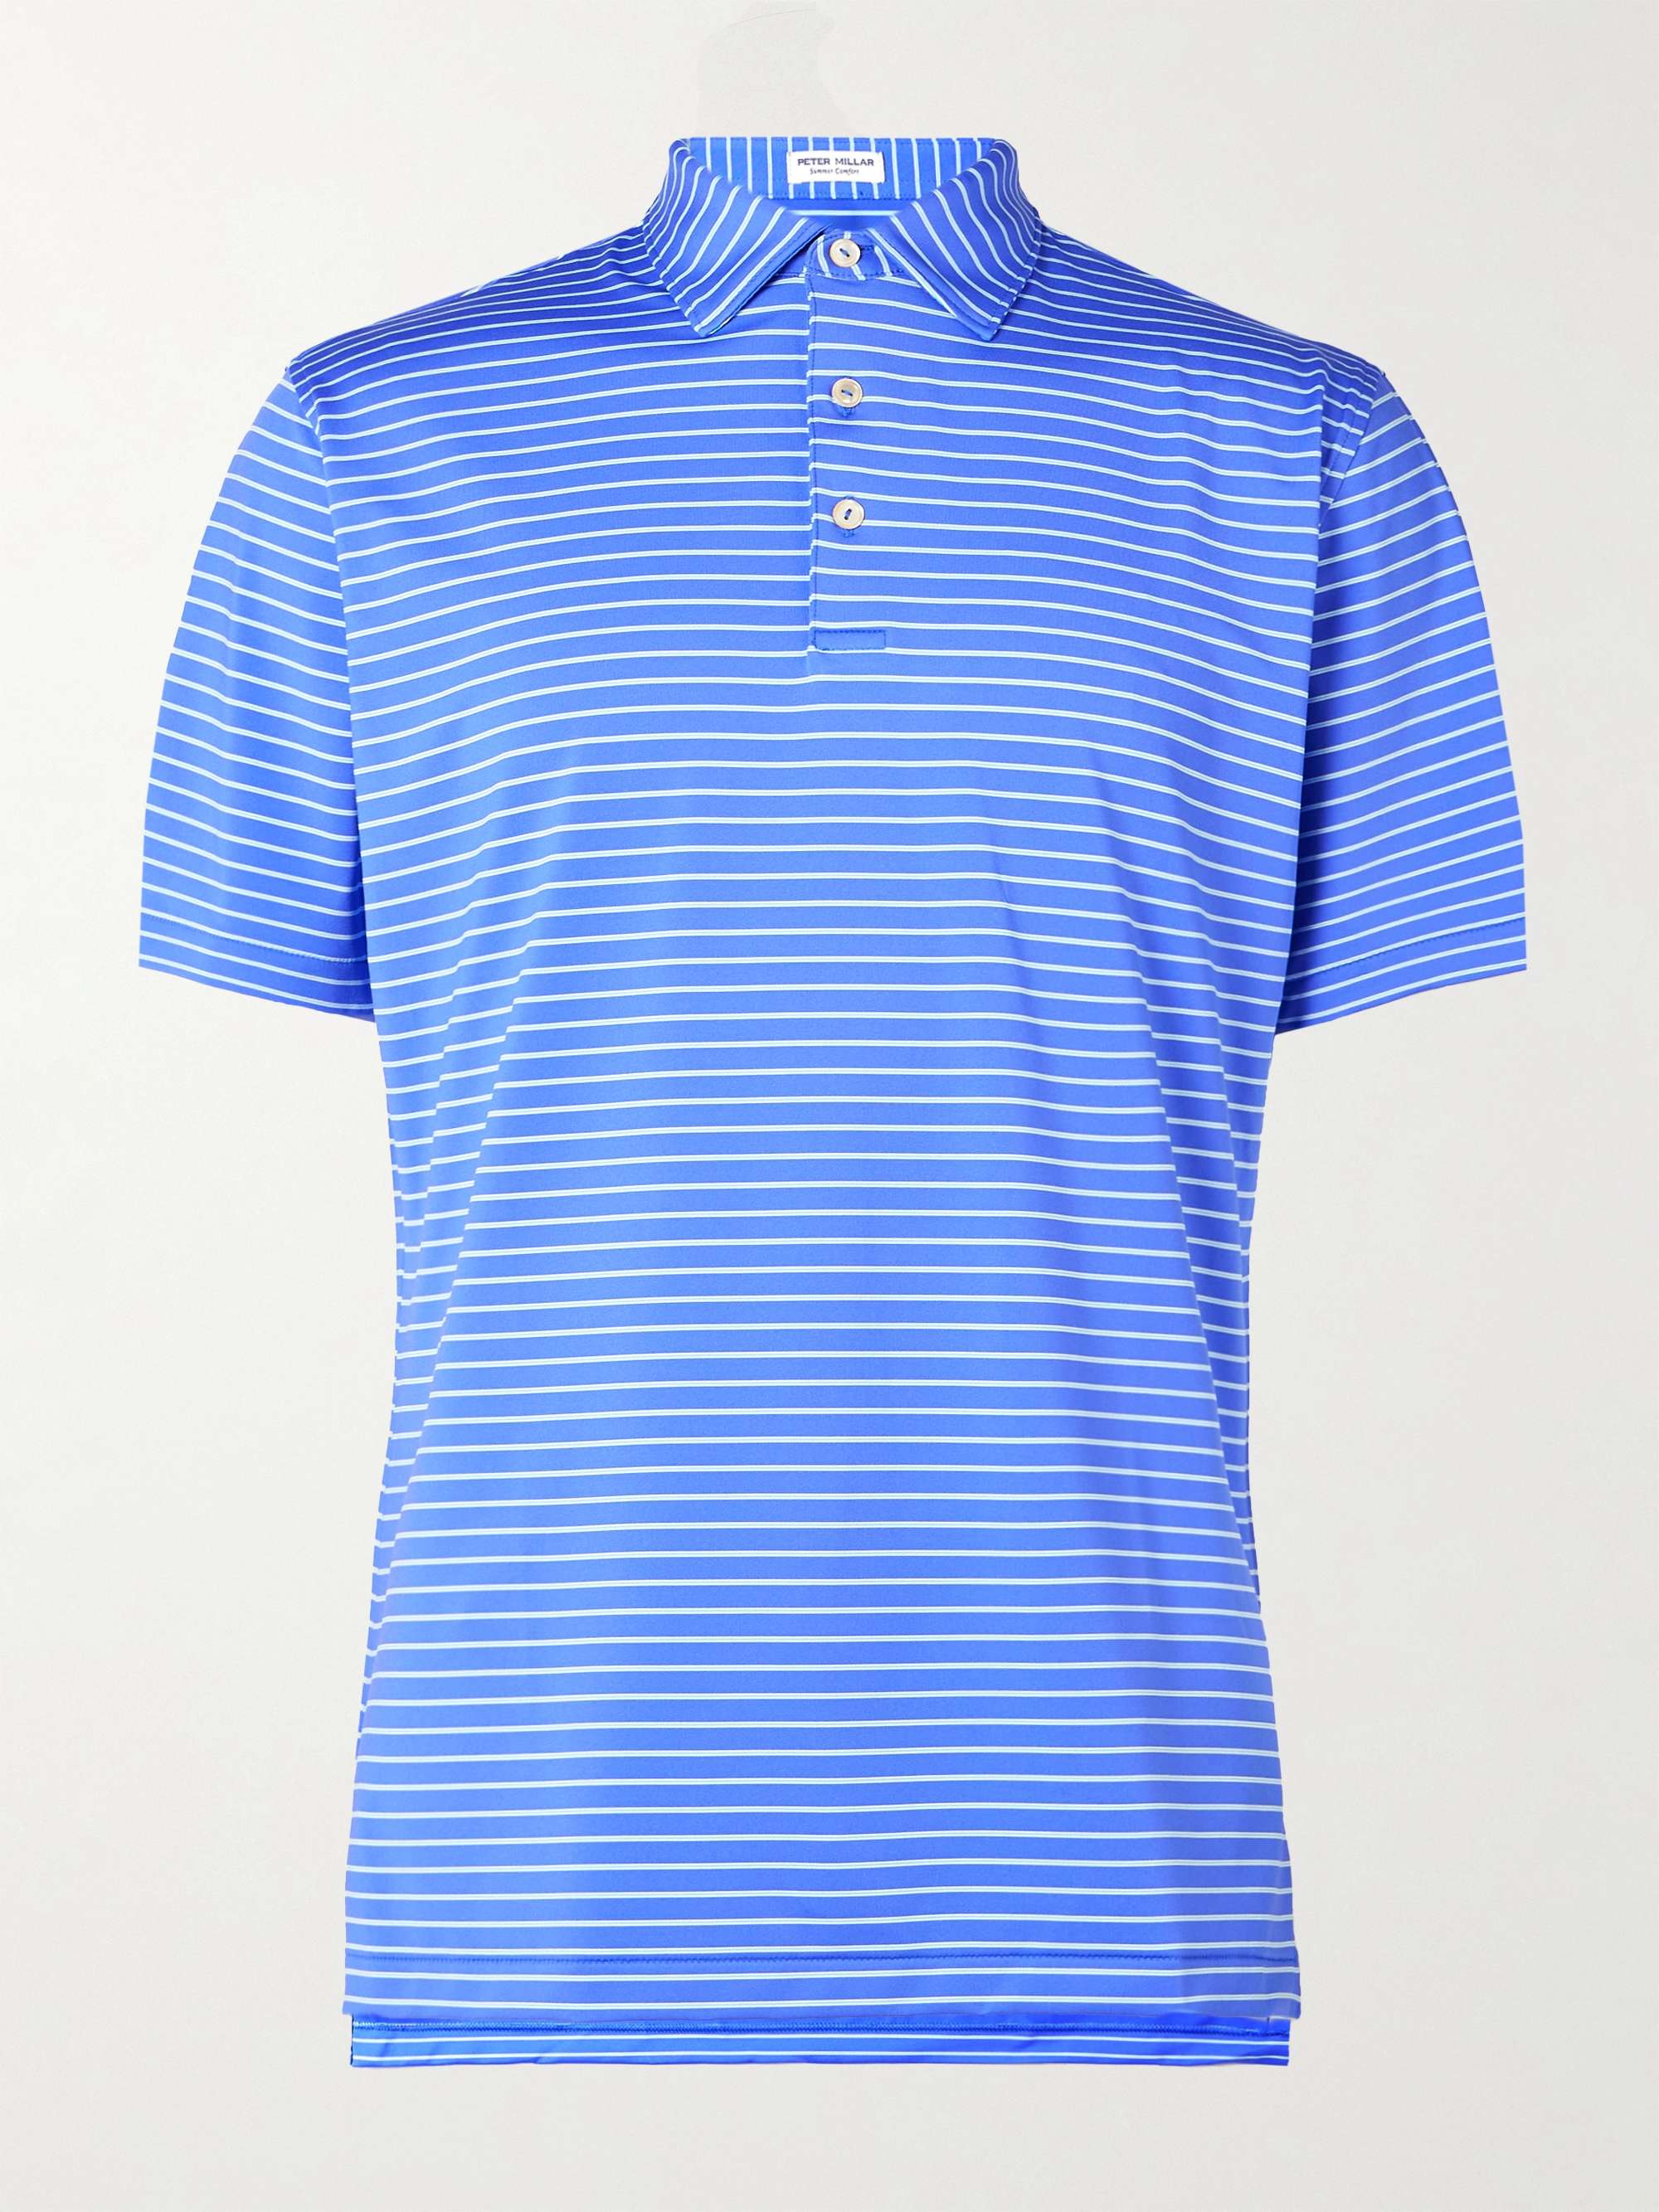 PETER MILLAR Drum Striped Tech-Jersey Golf Polo Shirt for Men